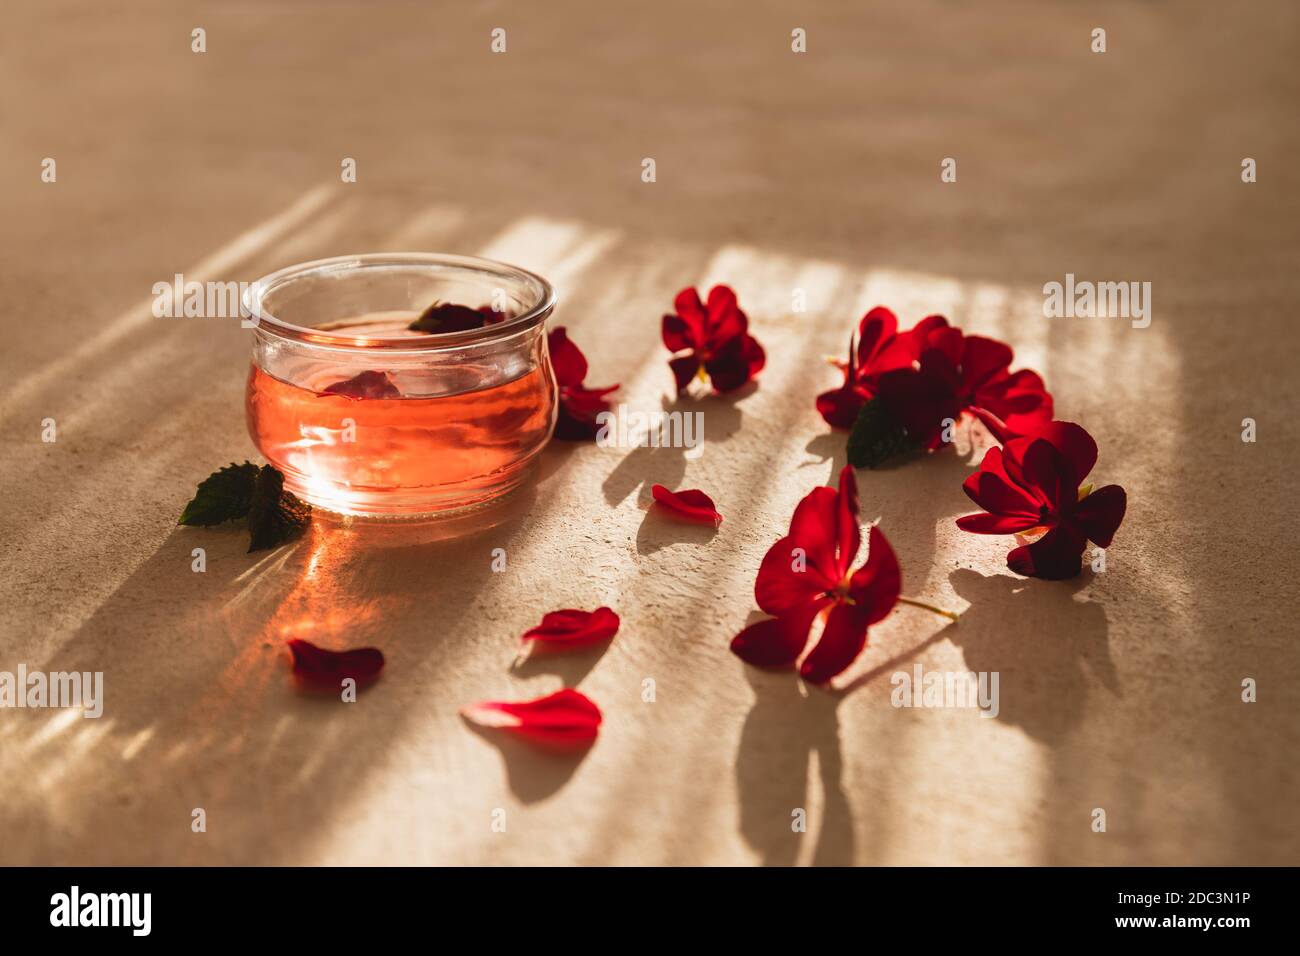 Ciotola di vetro piena di acqua di rosa organica e petali di rosa sul lato. Luce solare dura su uno sfondo morbido color bucato. Trattamenti termali, olio di rosa, aromatizzanti Foto Stock